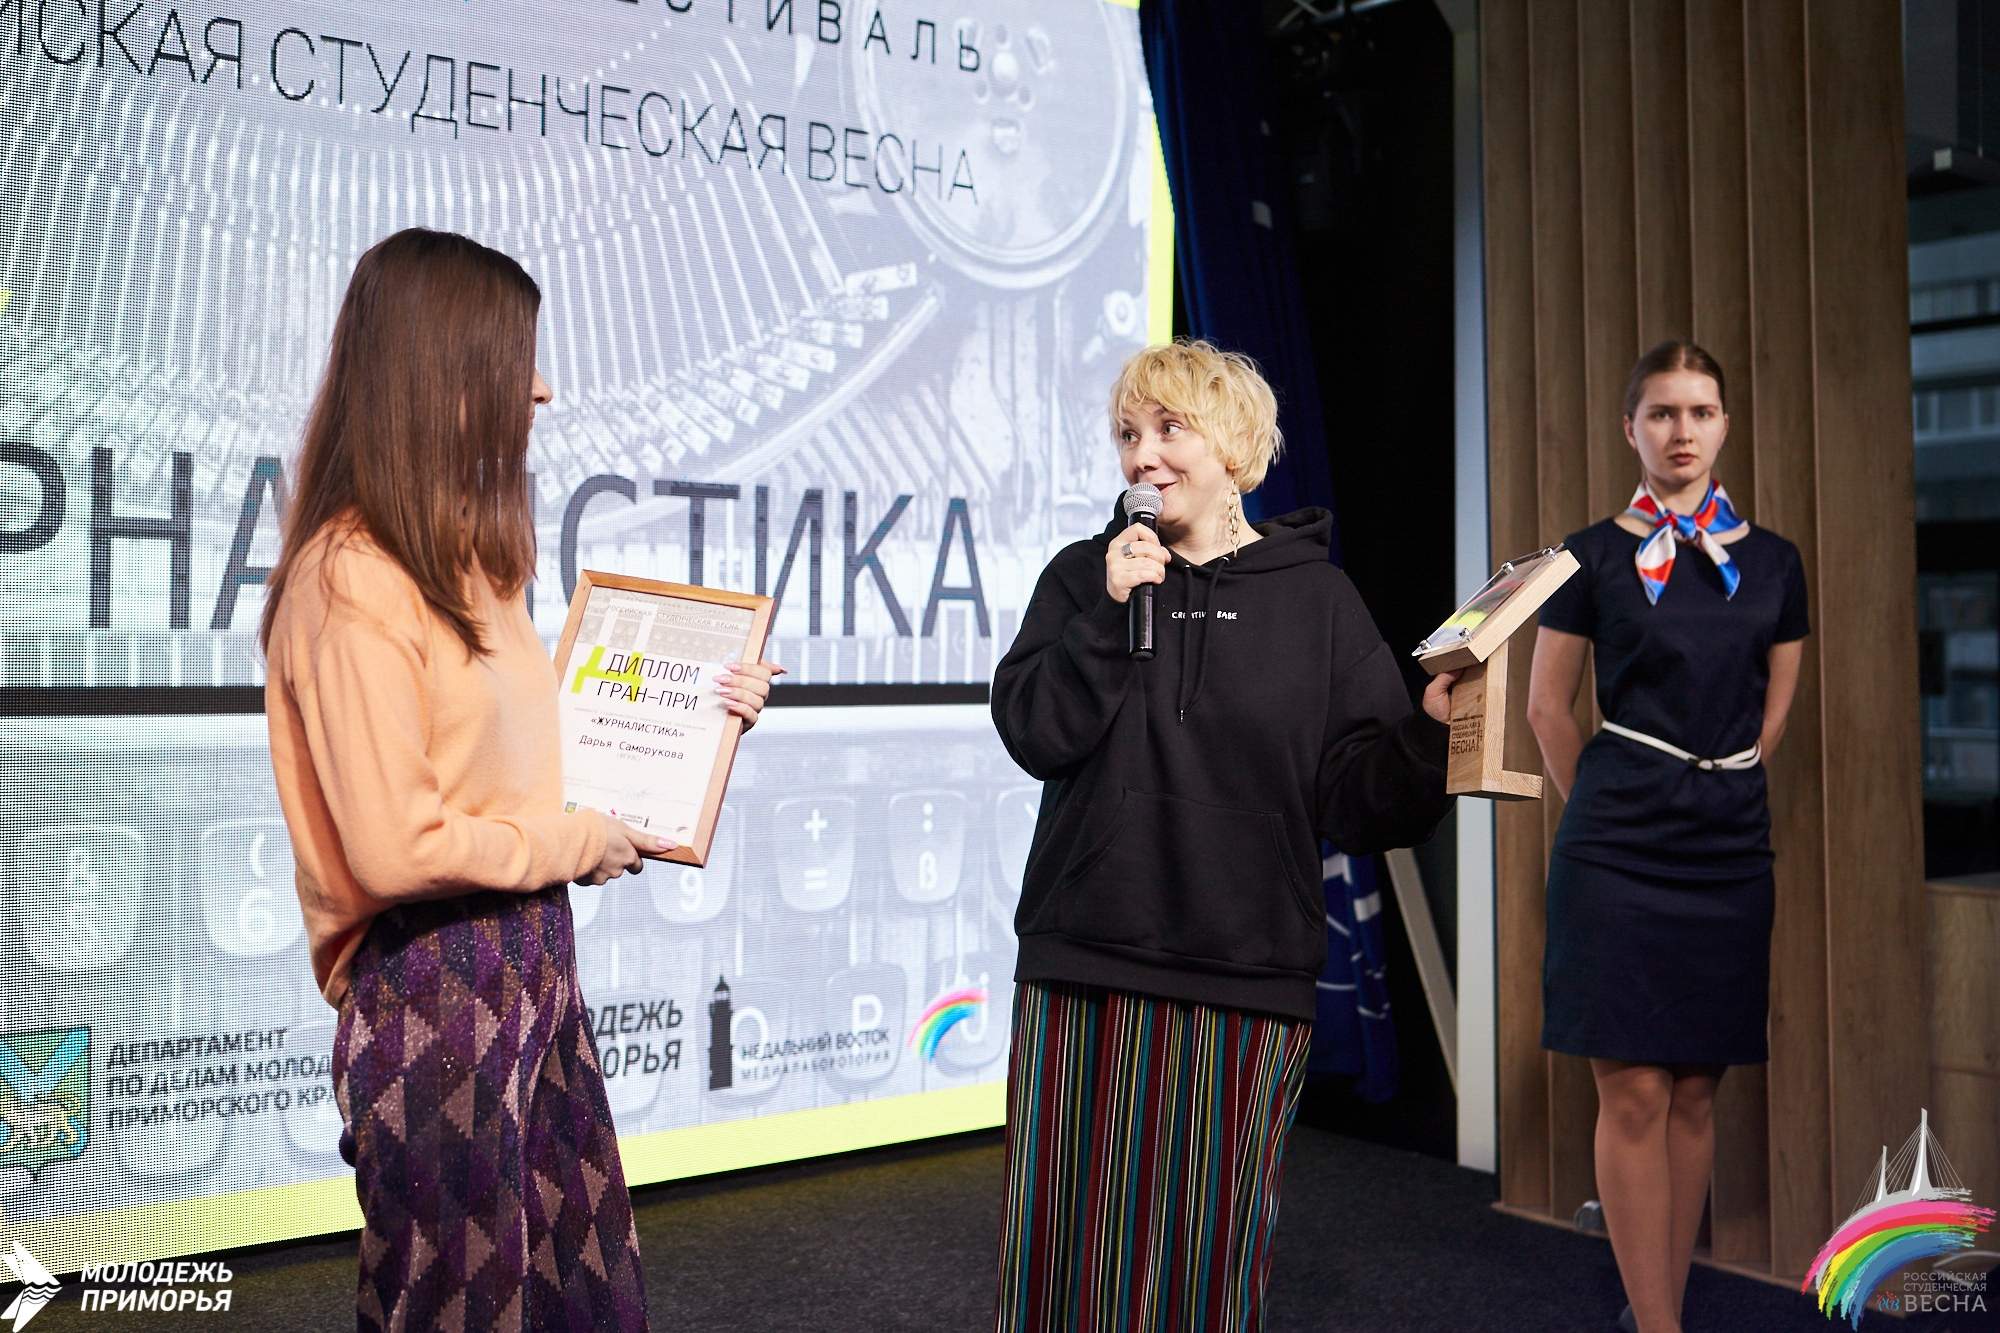 Студенты ВГУЭС представят Приморье на Всероссийском студенческом фестивале в Перми